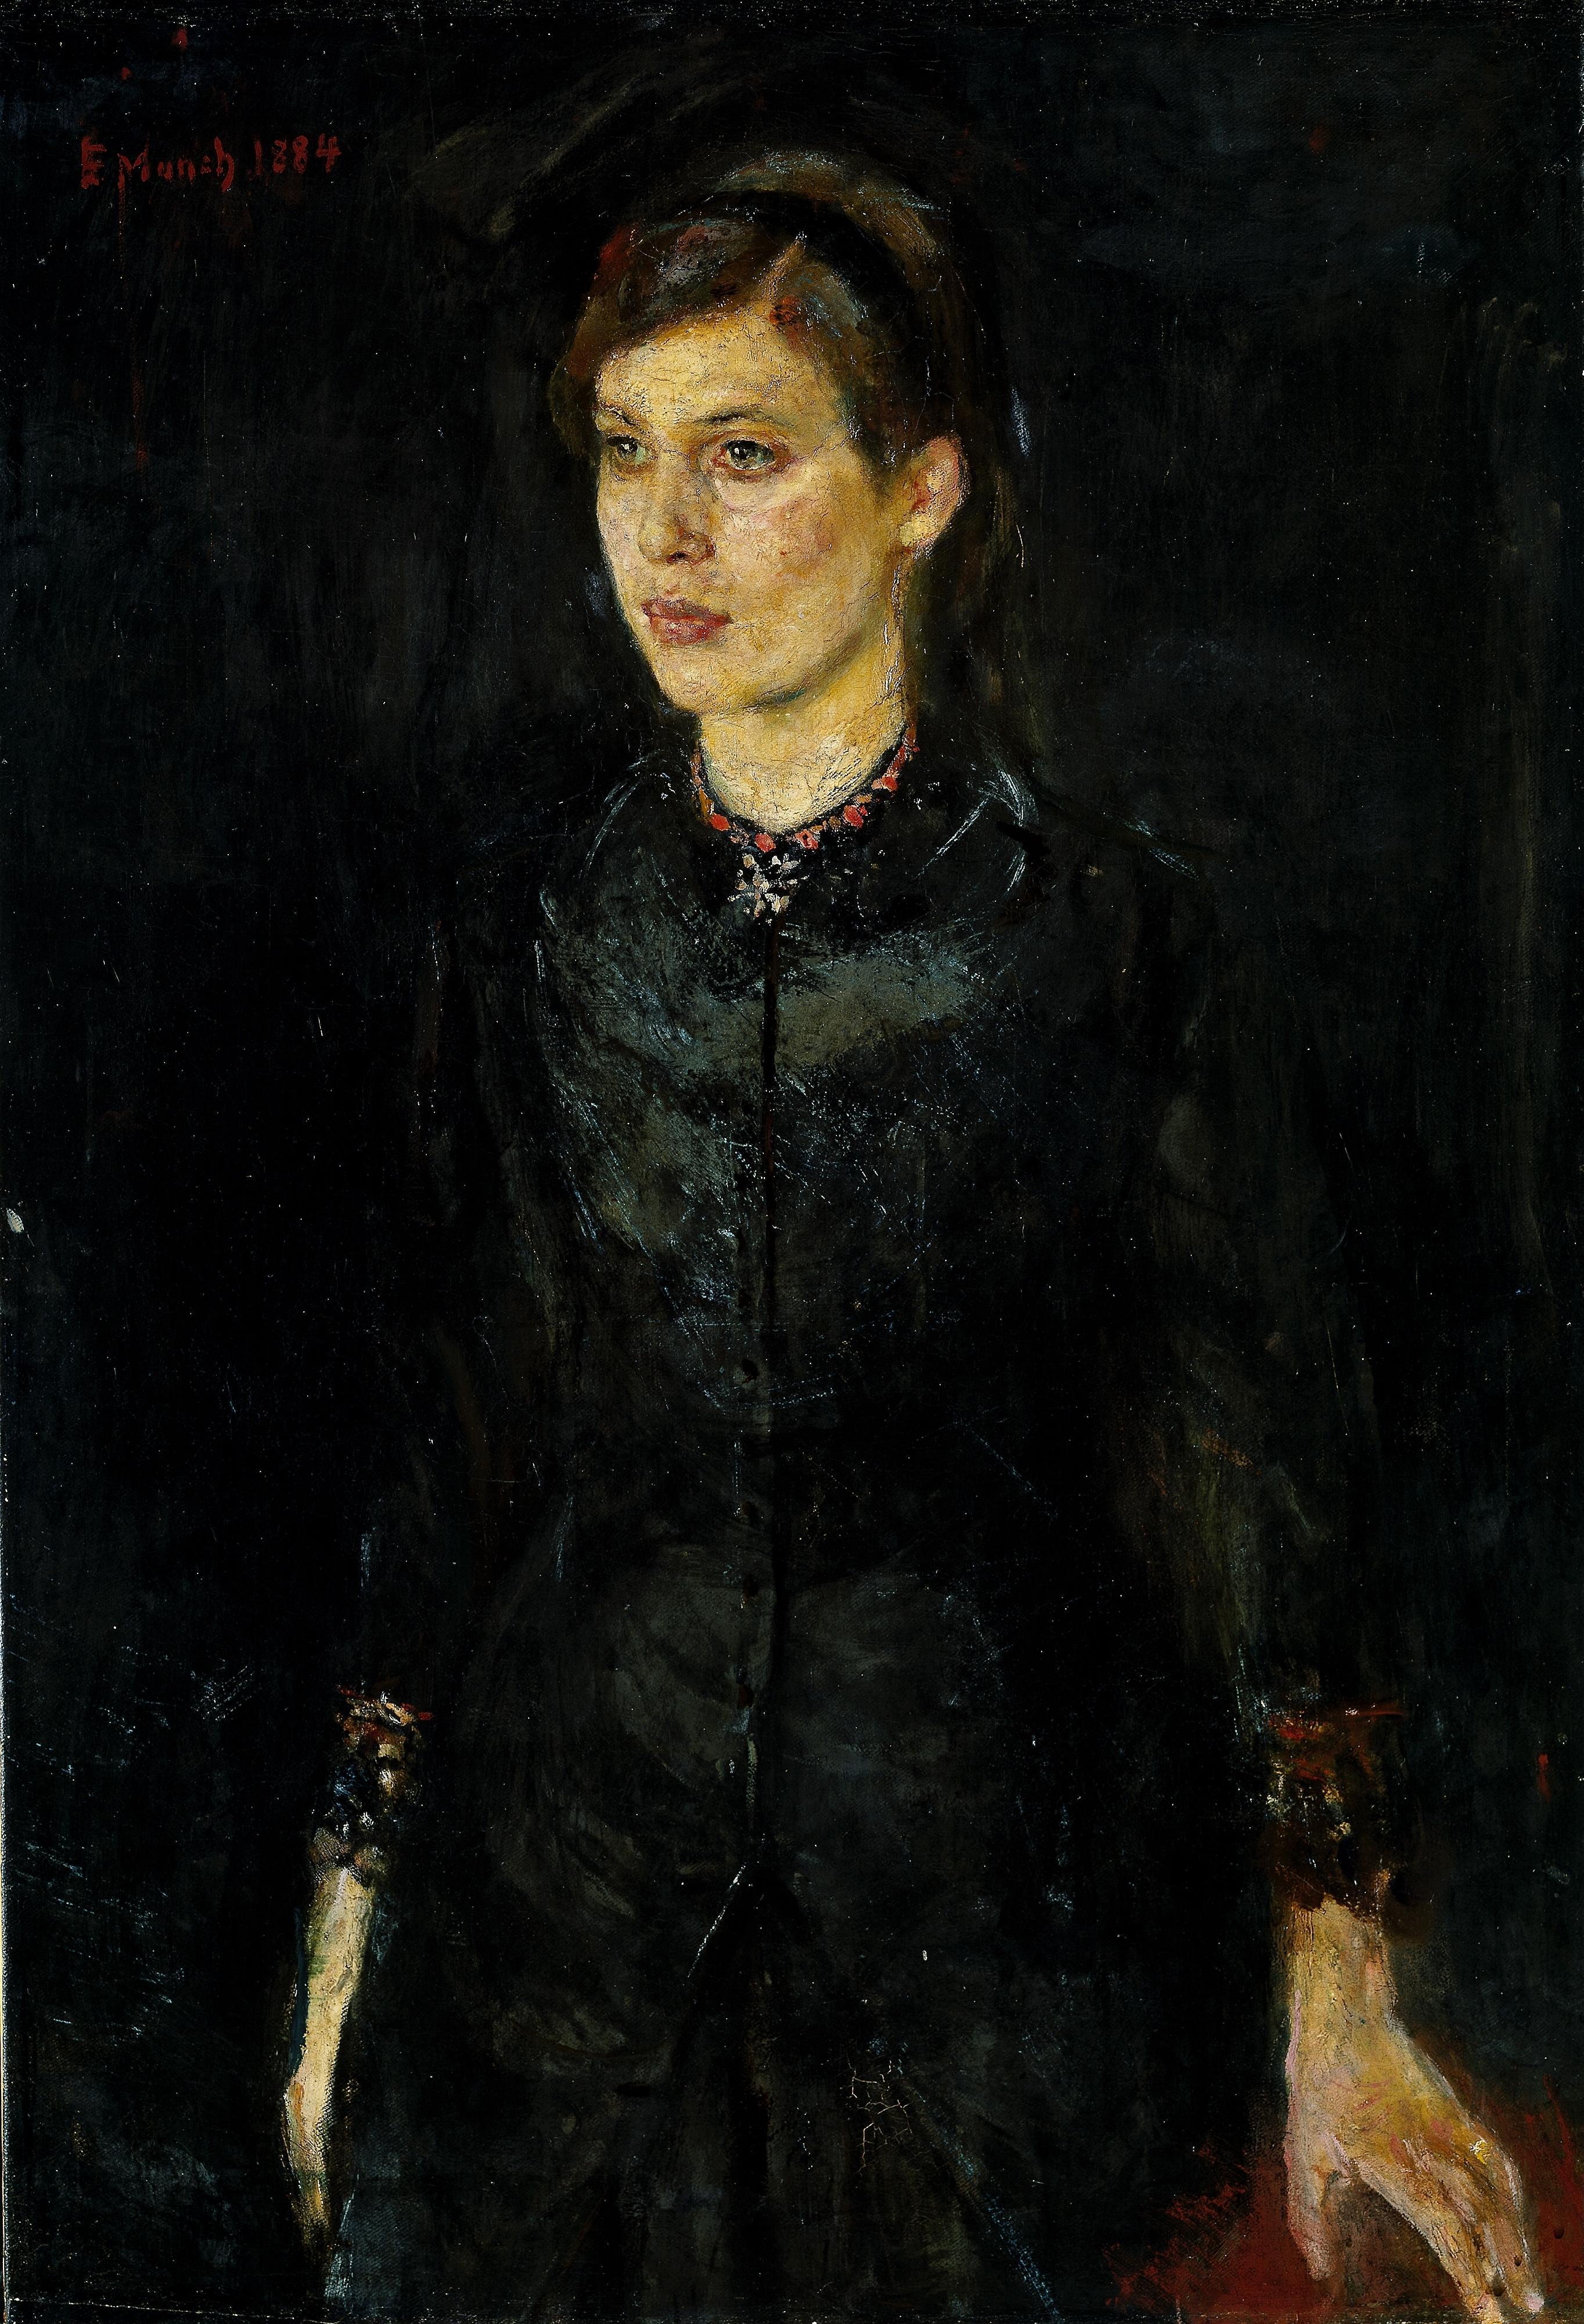 Siyah Giyinmiş Inger (orig. "Inger in Black") by Edvard Munch - 1884 - 97 x 67 cm 